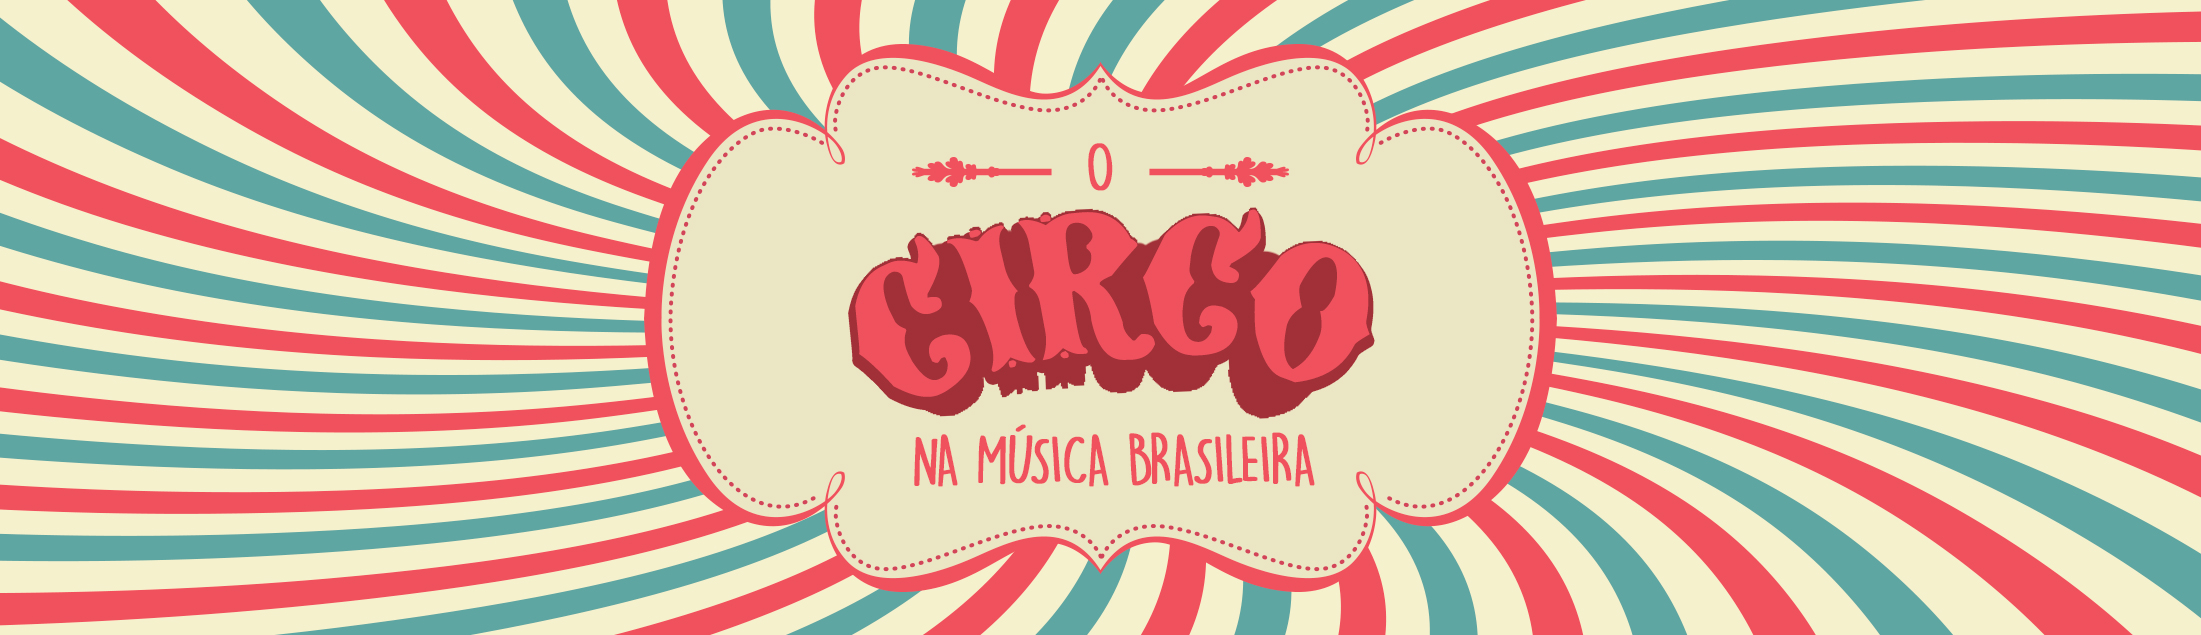 Hoje tem marmelada? O circo na música brasileira!